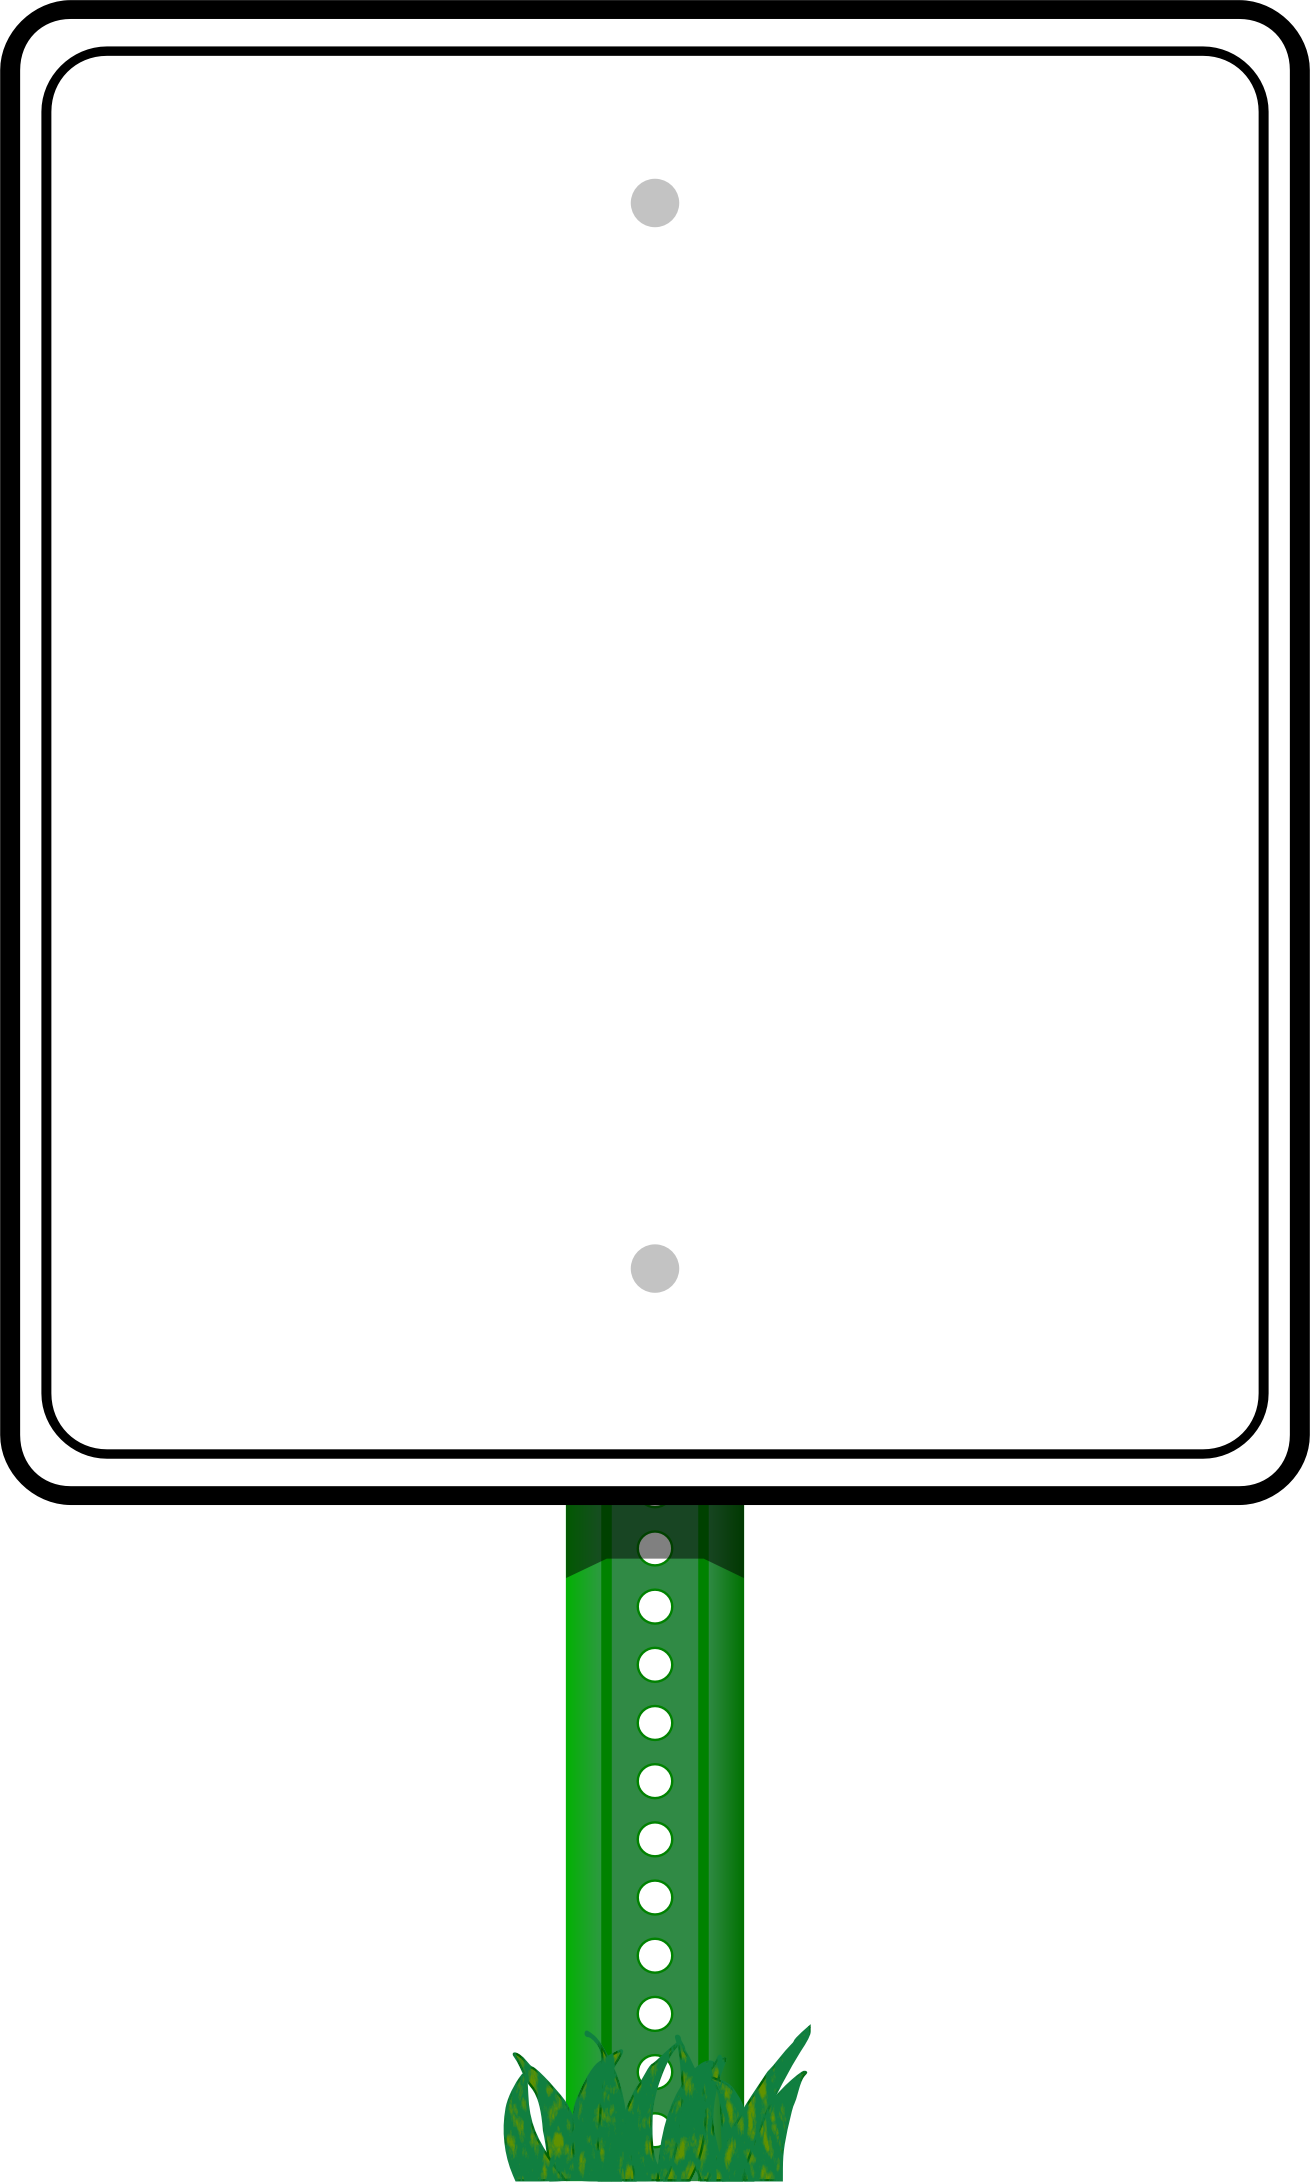 Big Image - Road Sign Transparent (1310x2182)